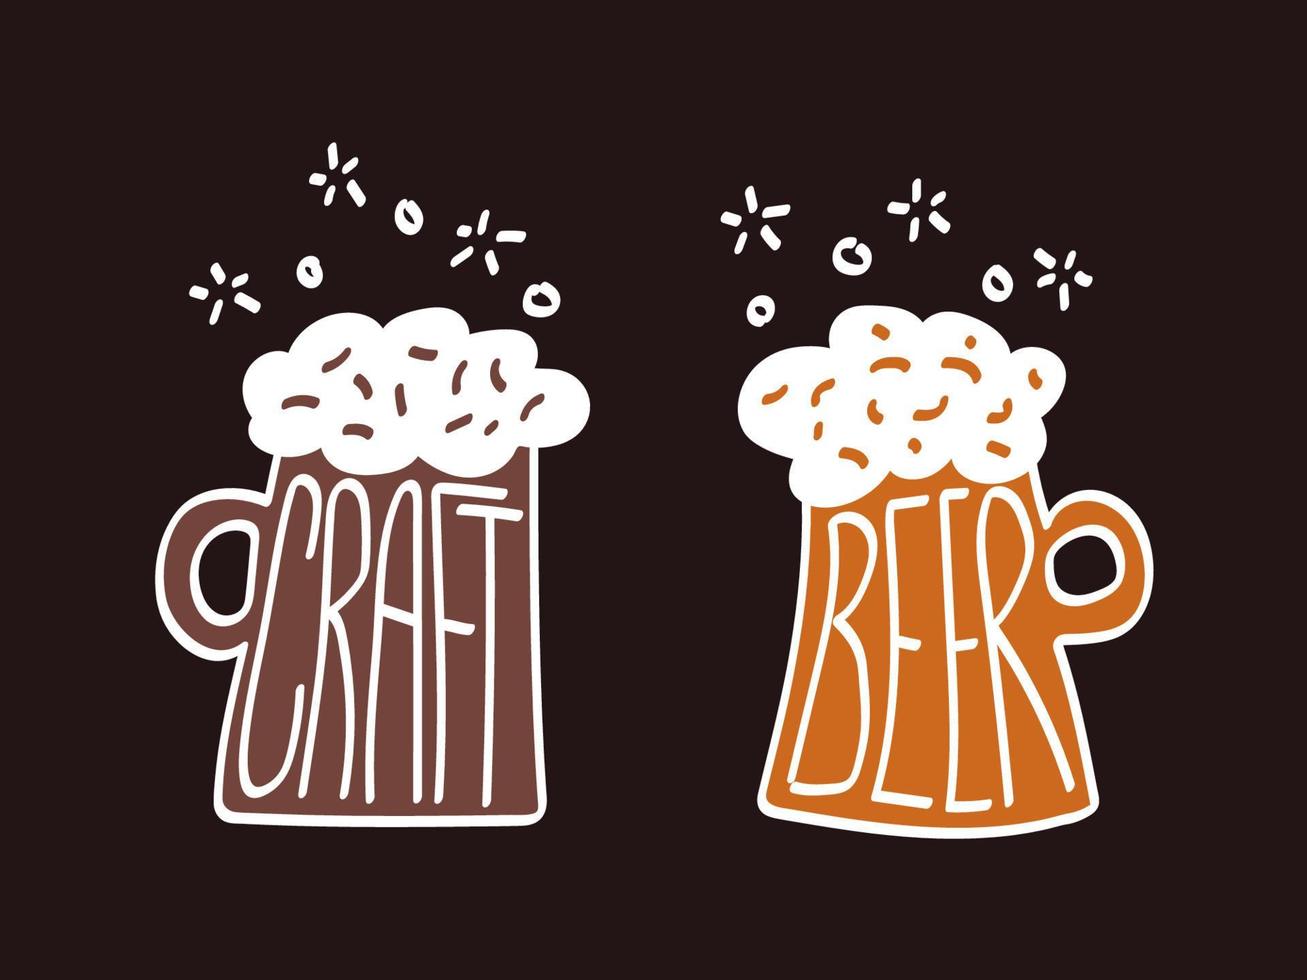 Craft beer mug with foam. Sketch vector illustration